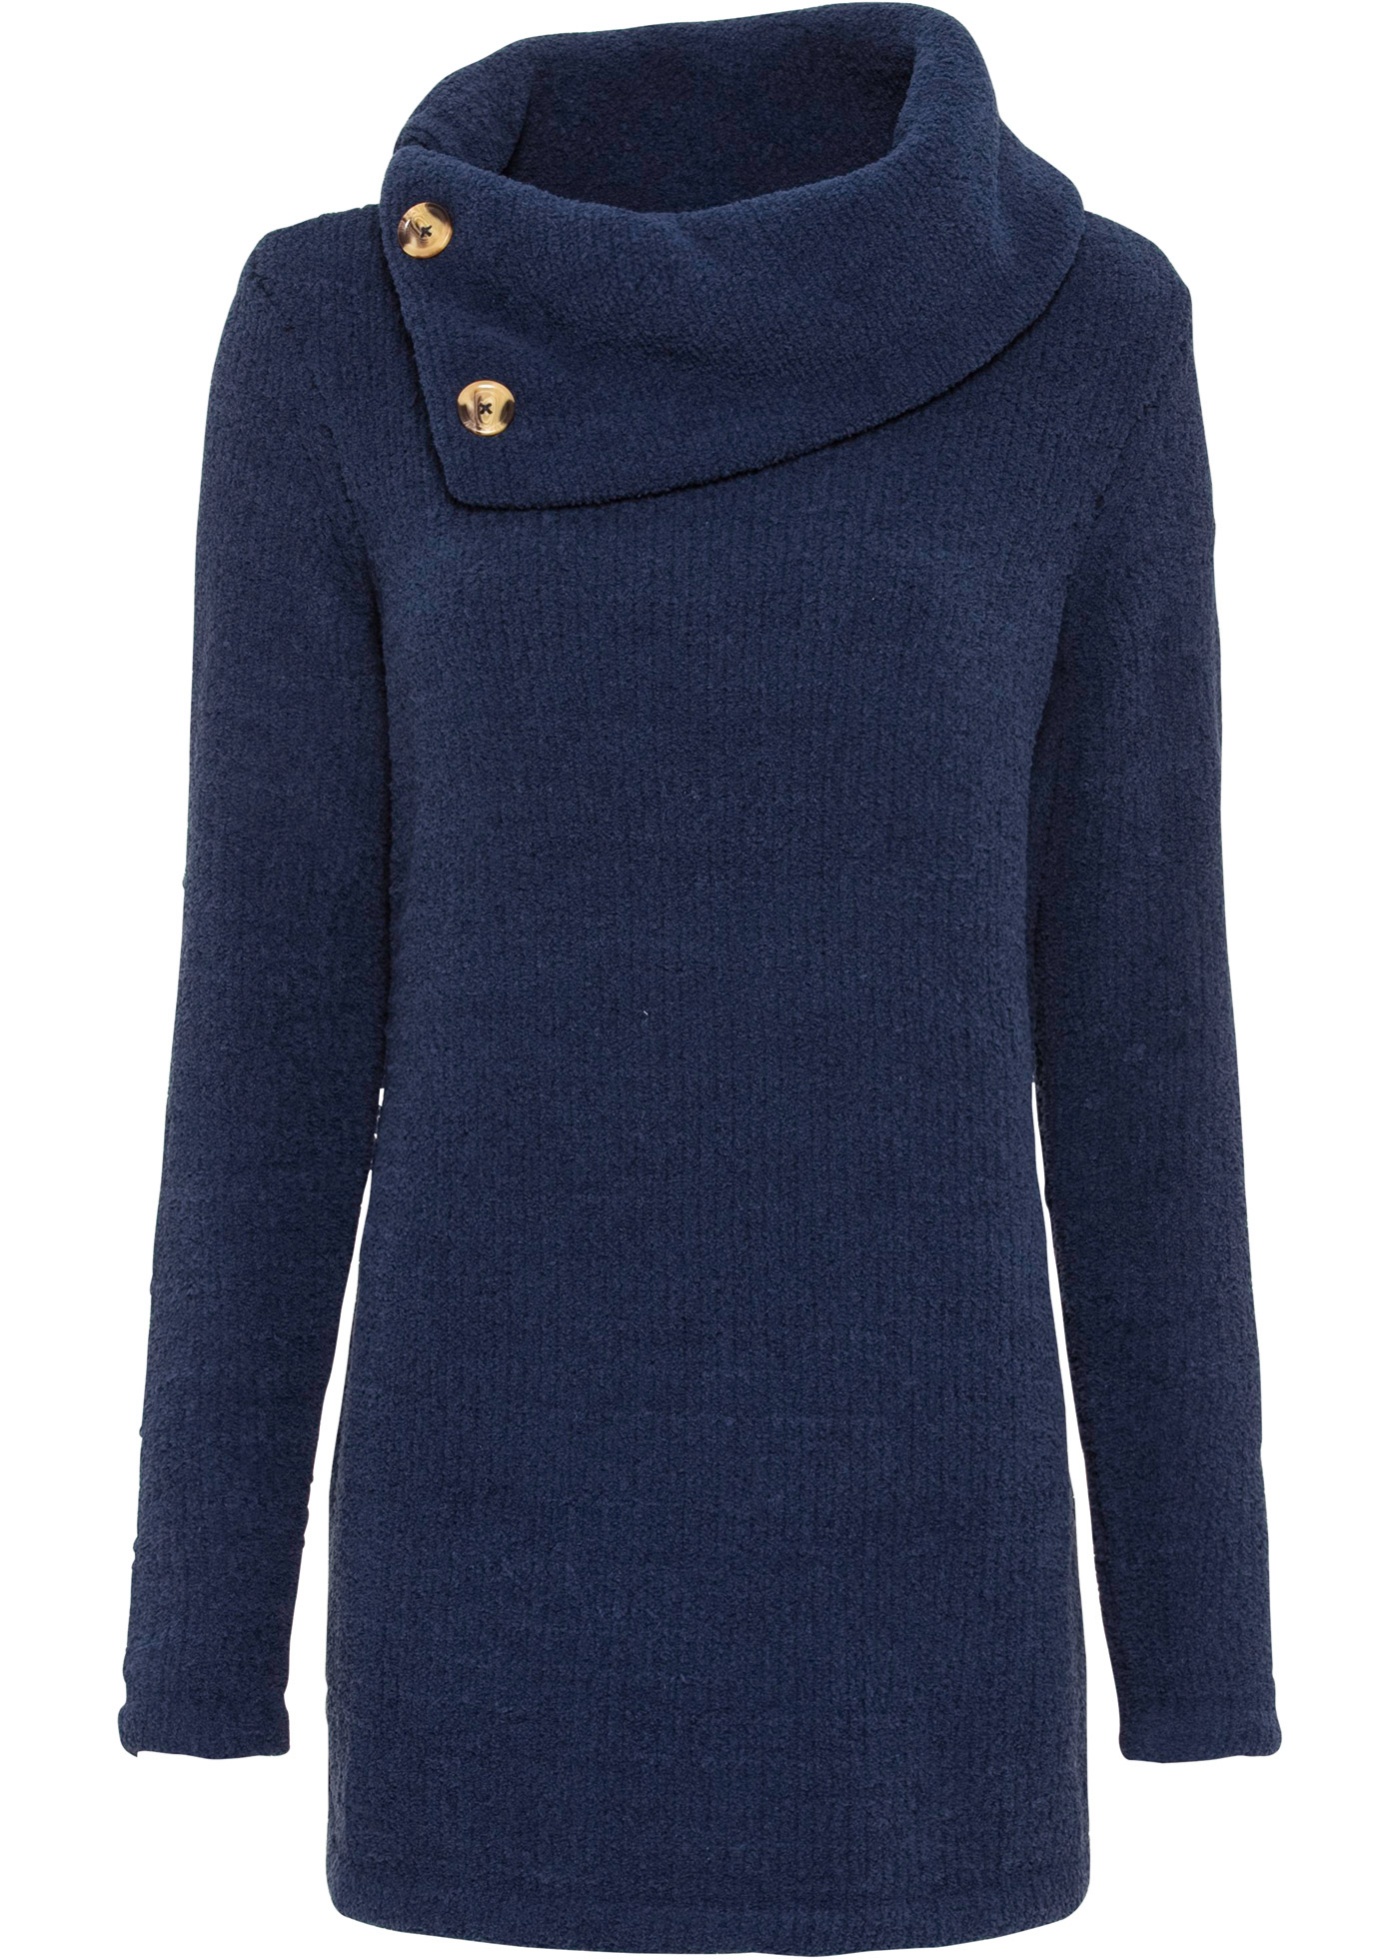 Kuschliger Pullover mit Knöpfen am Kragen - dunkelblau